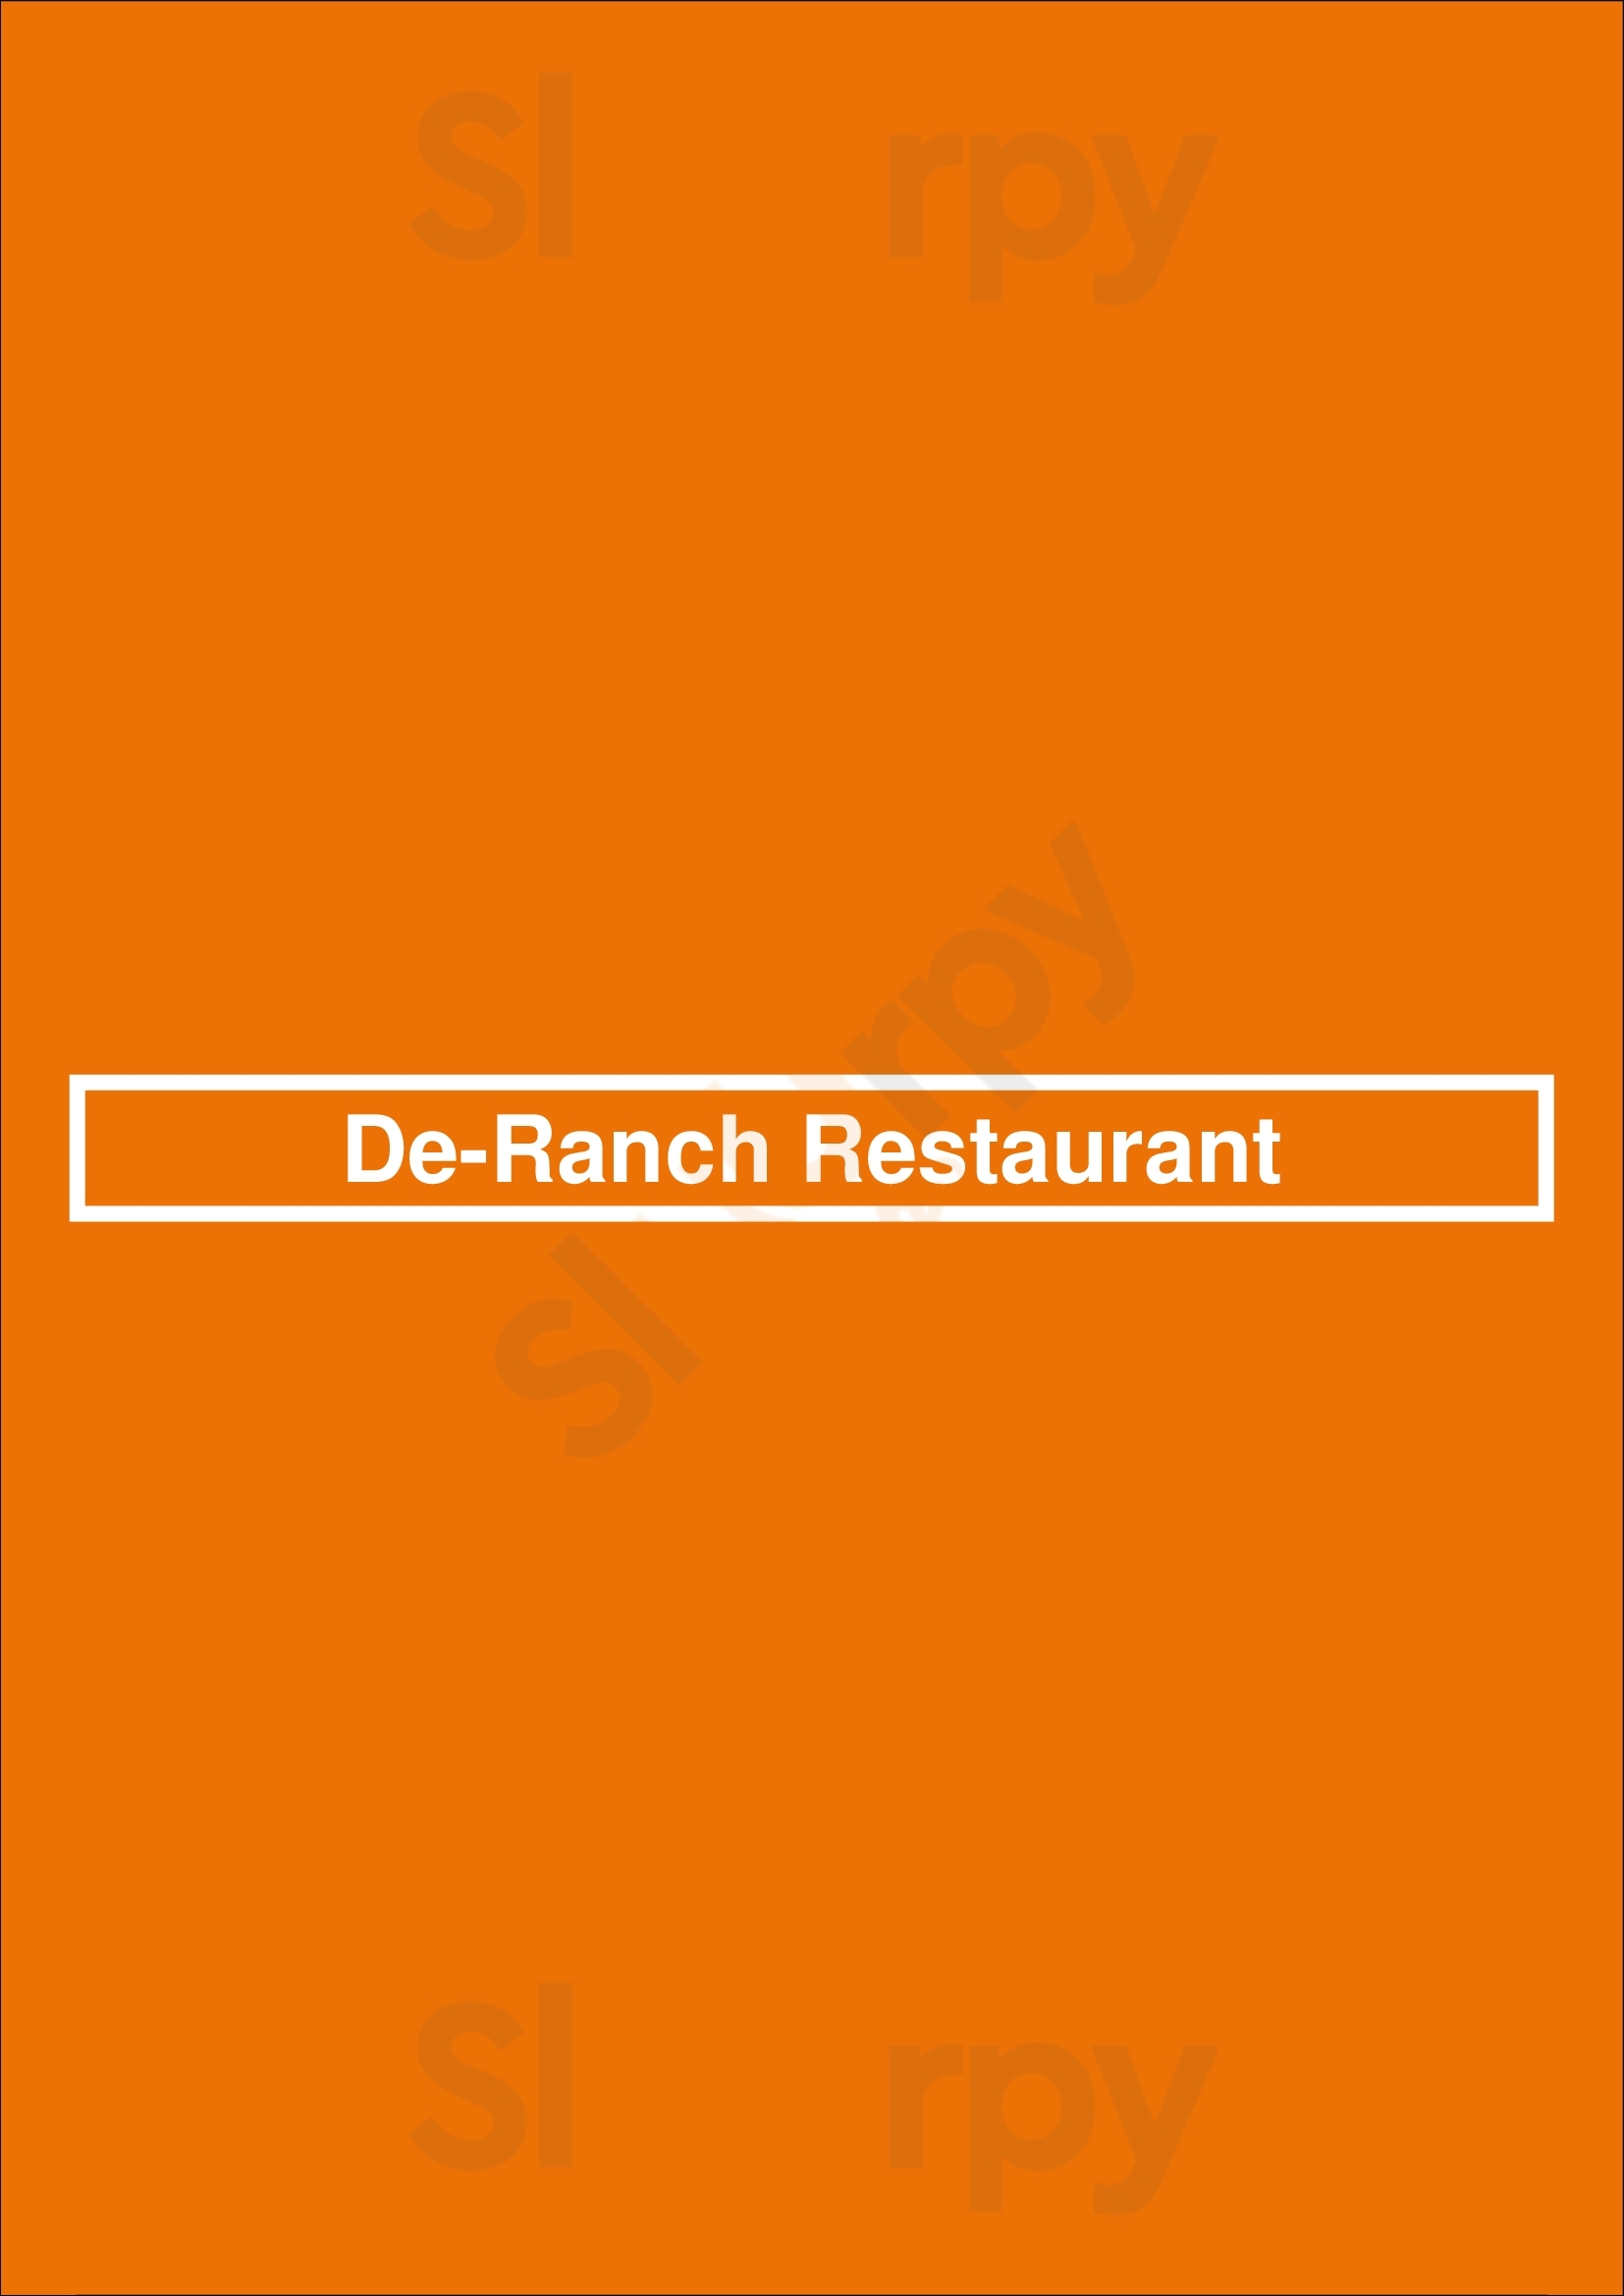 De-ranch Restaurant Hyattsville Menu - 1